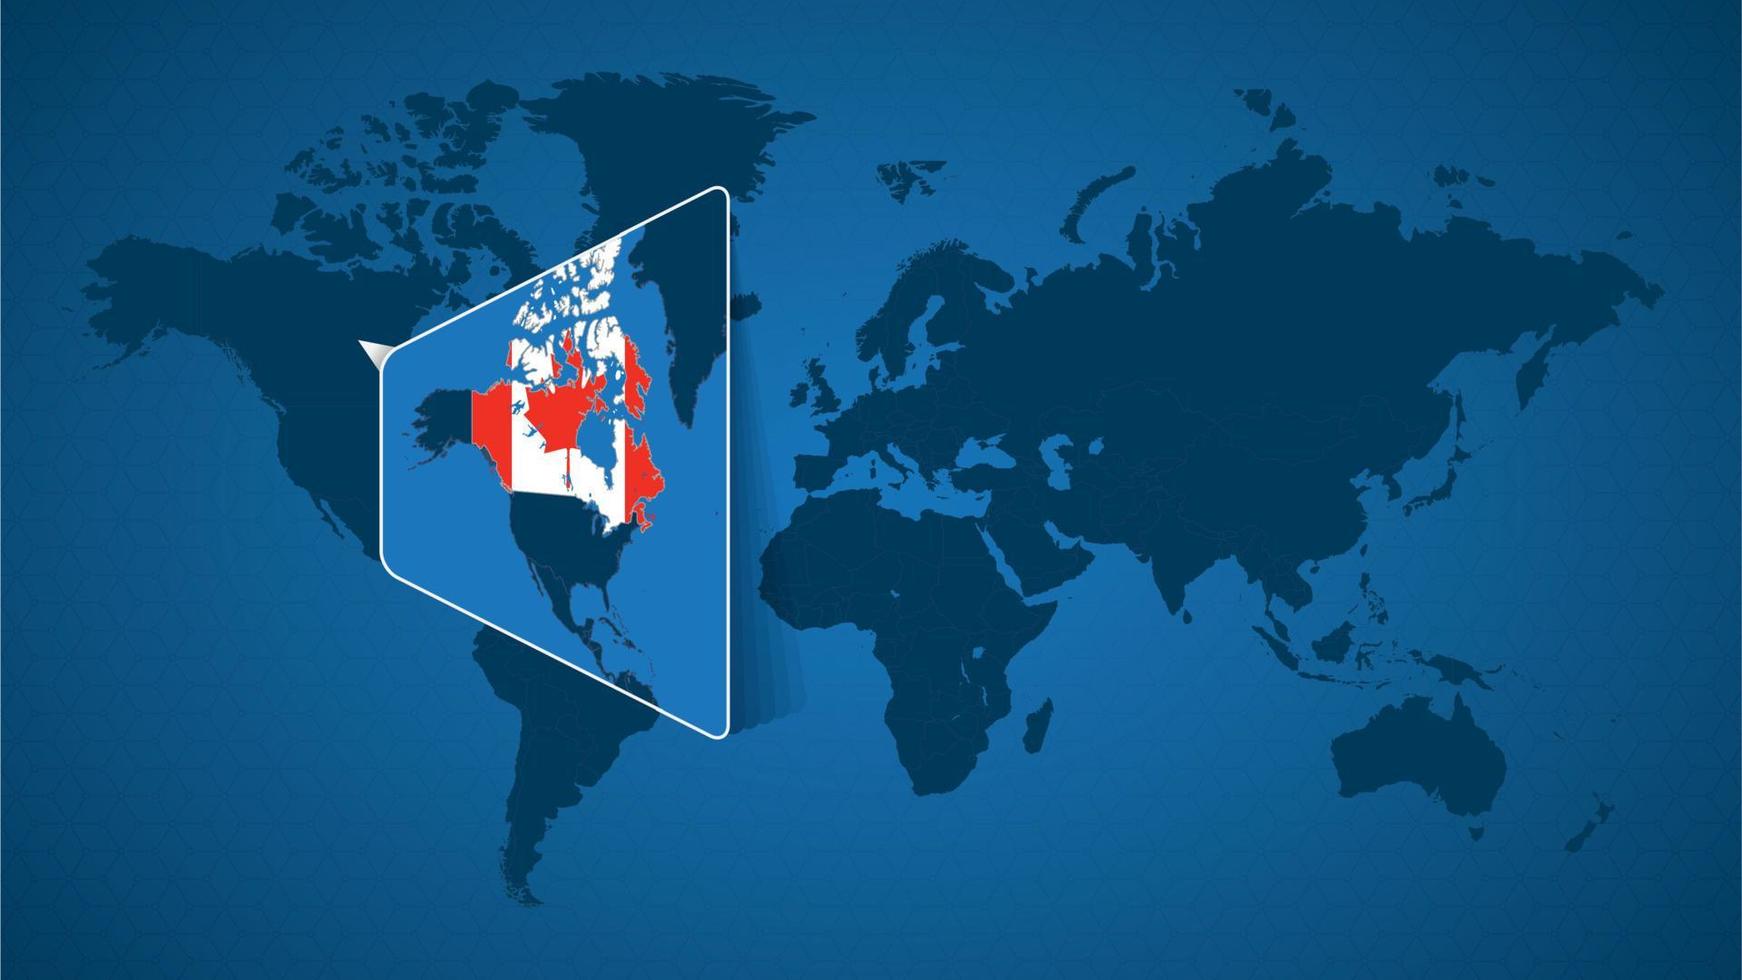 mappa del mondo dettagliata con mappa ingrandita appuntata del Canada e dei paesi vicini. vettore